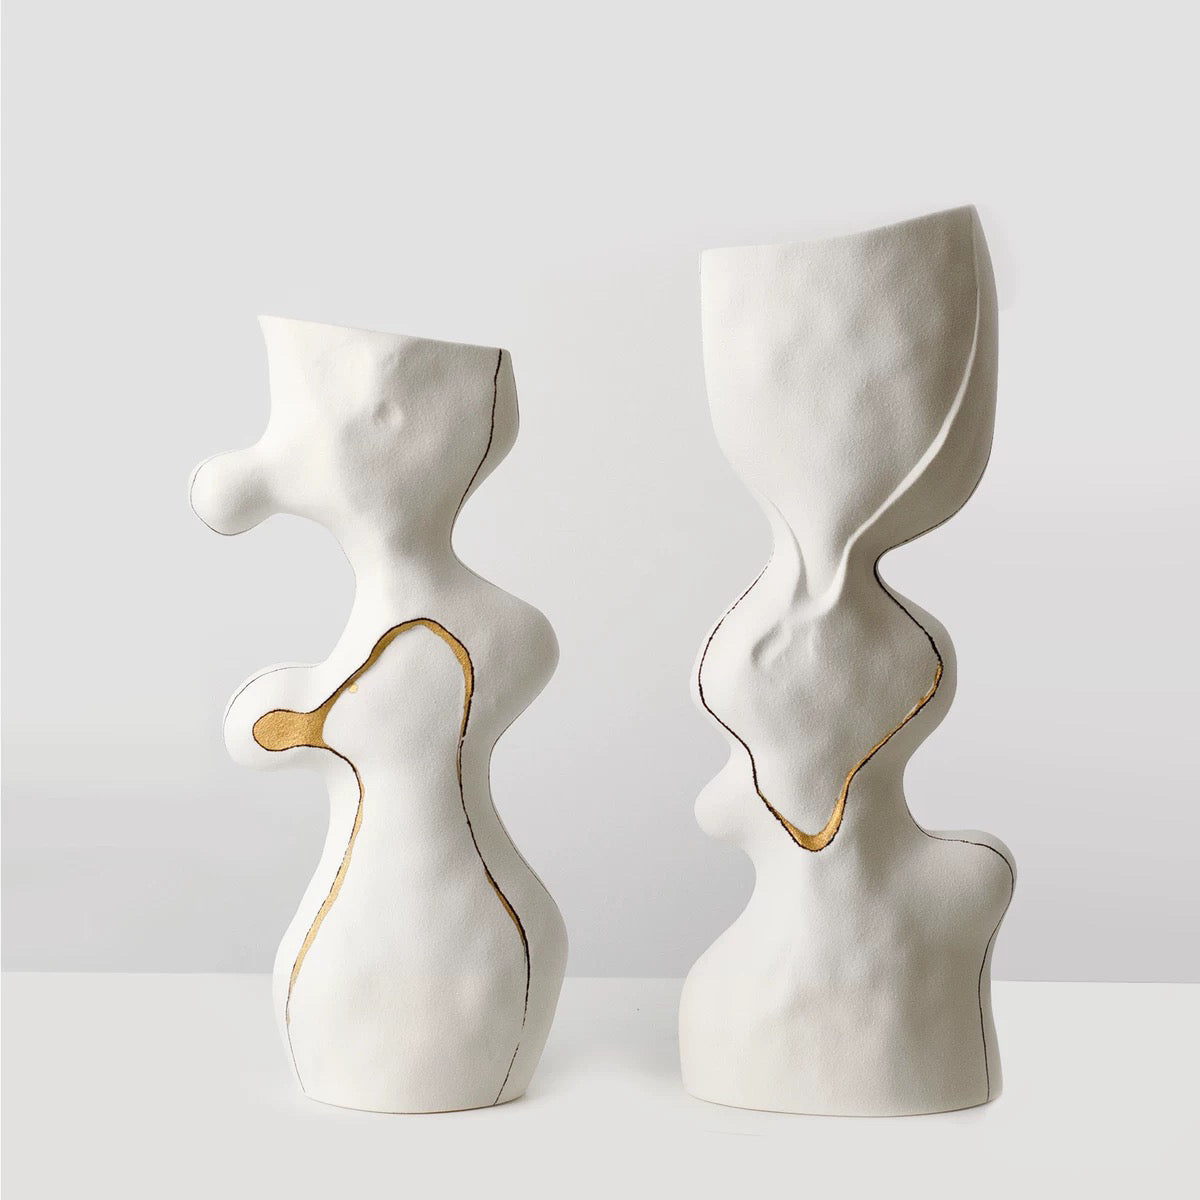 North sculptural ceramic vase